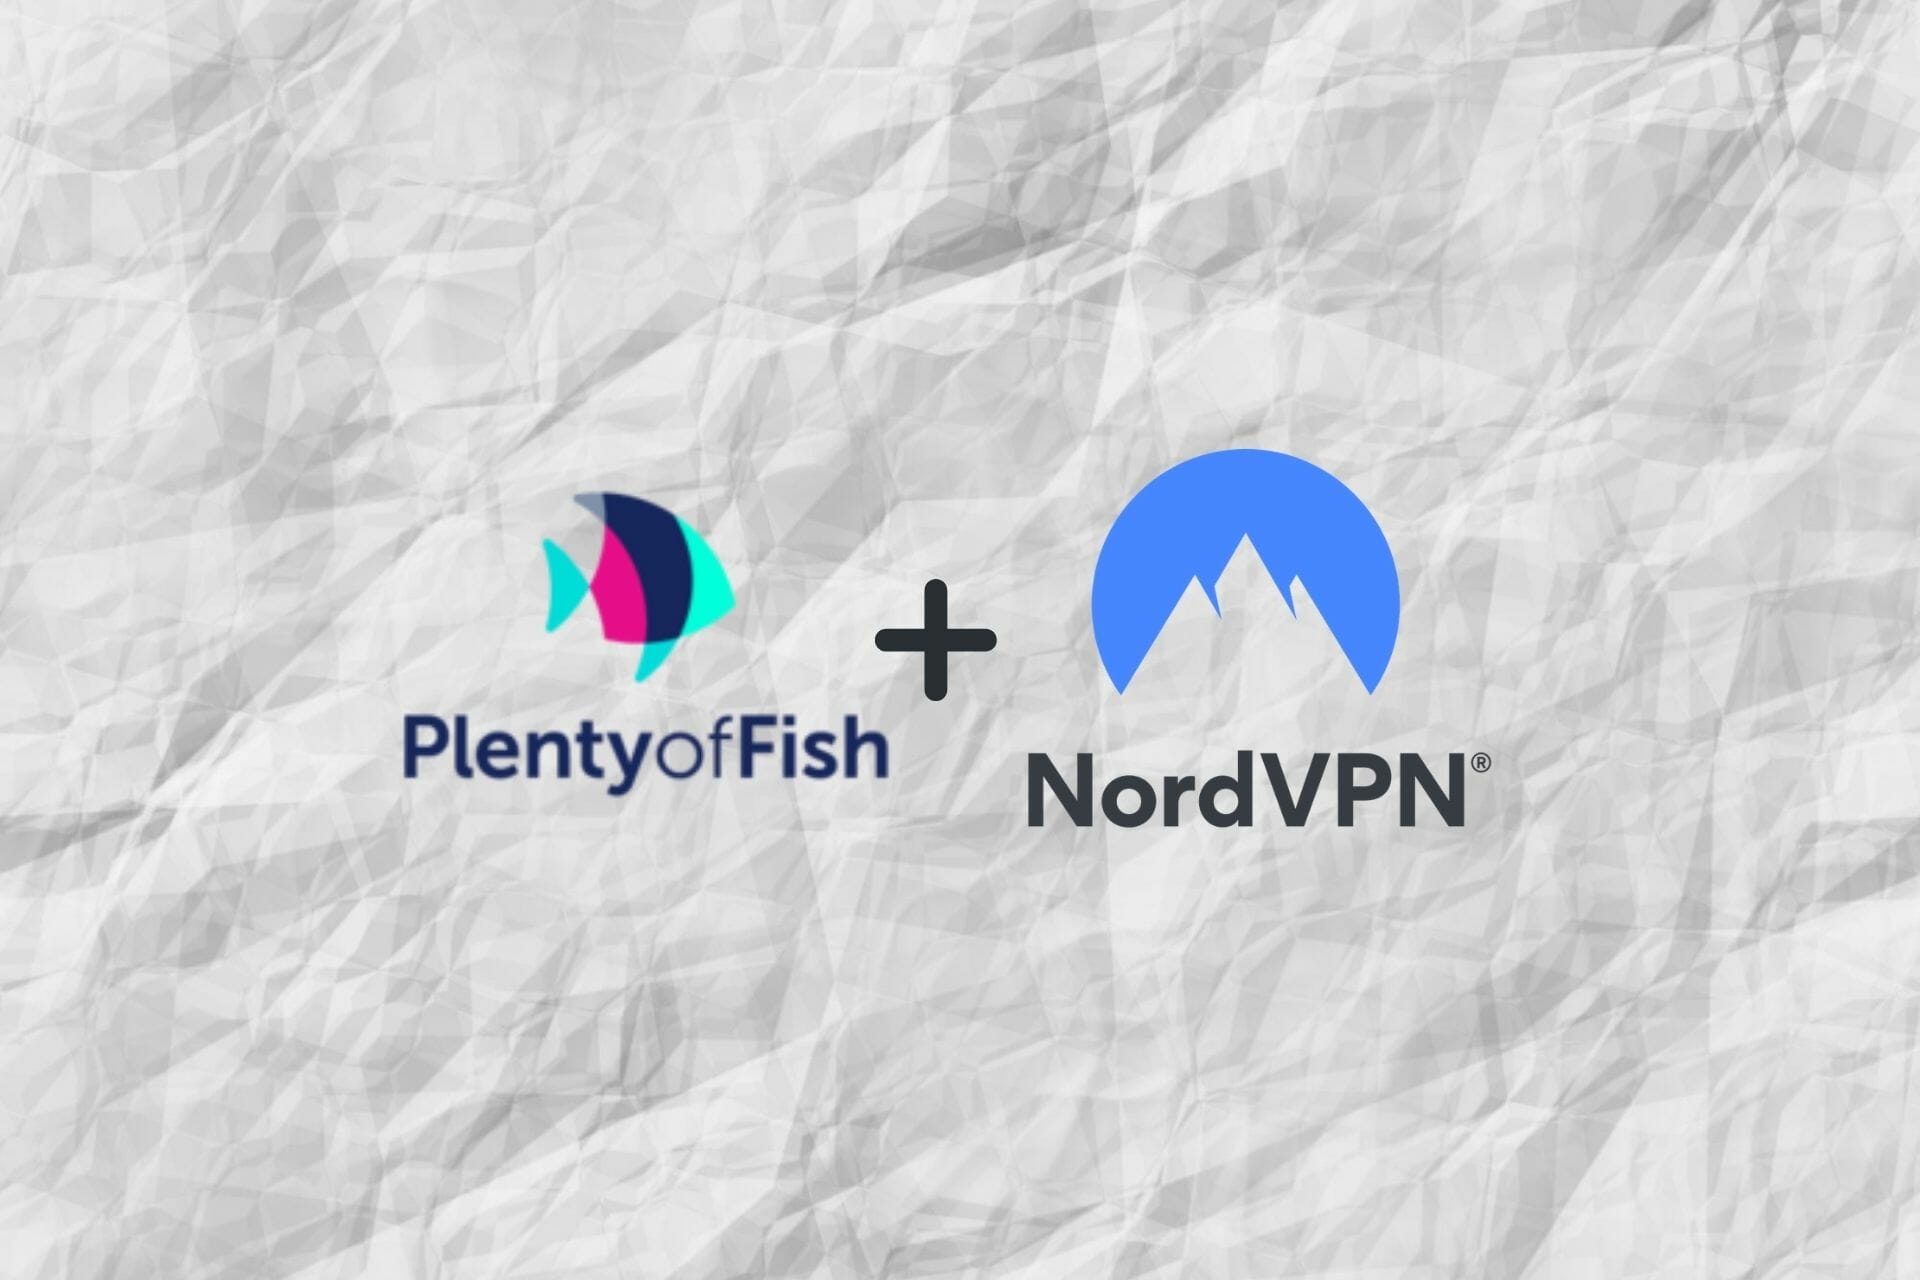 Can NordVPN access POF?